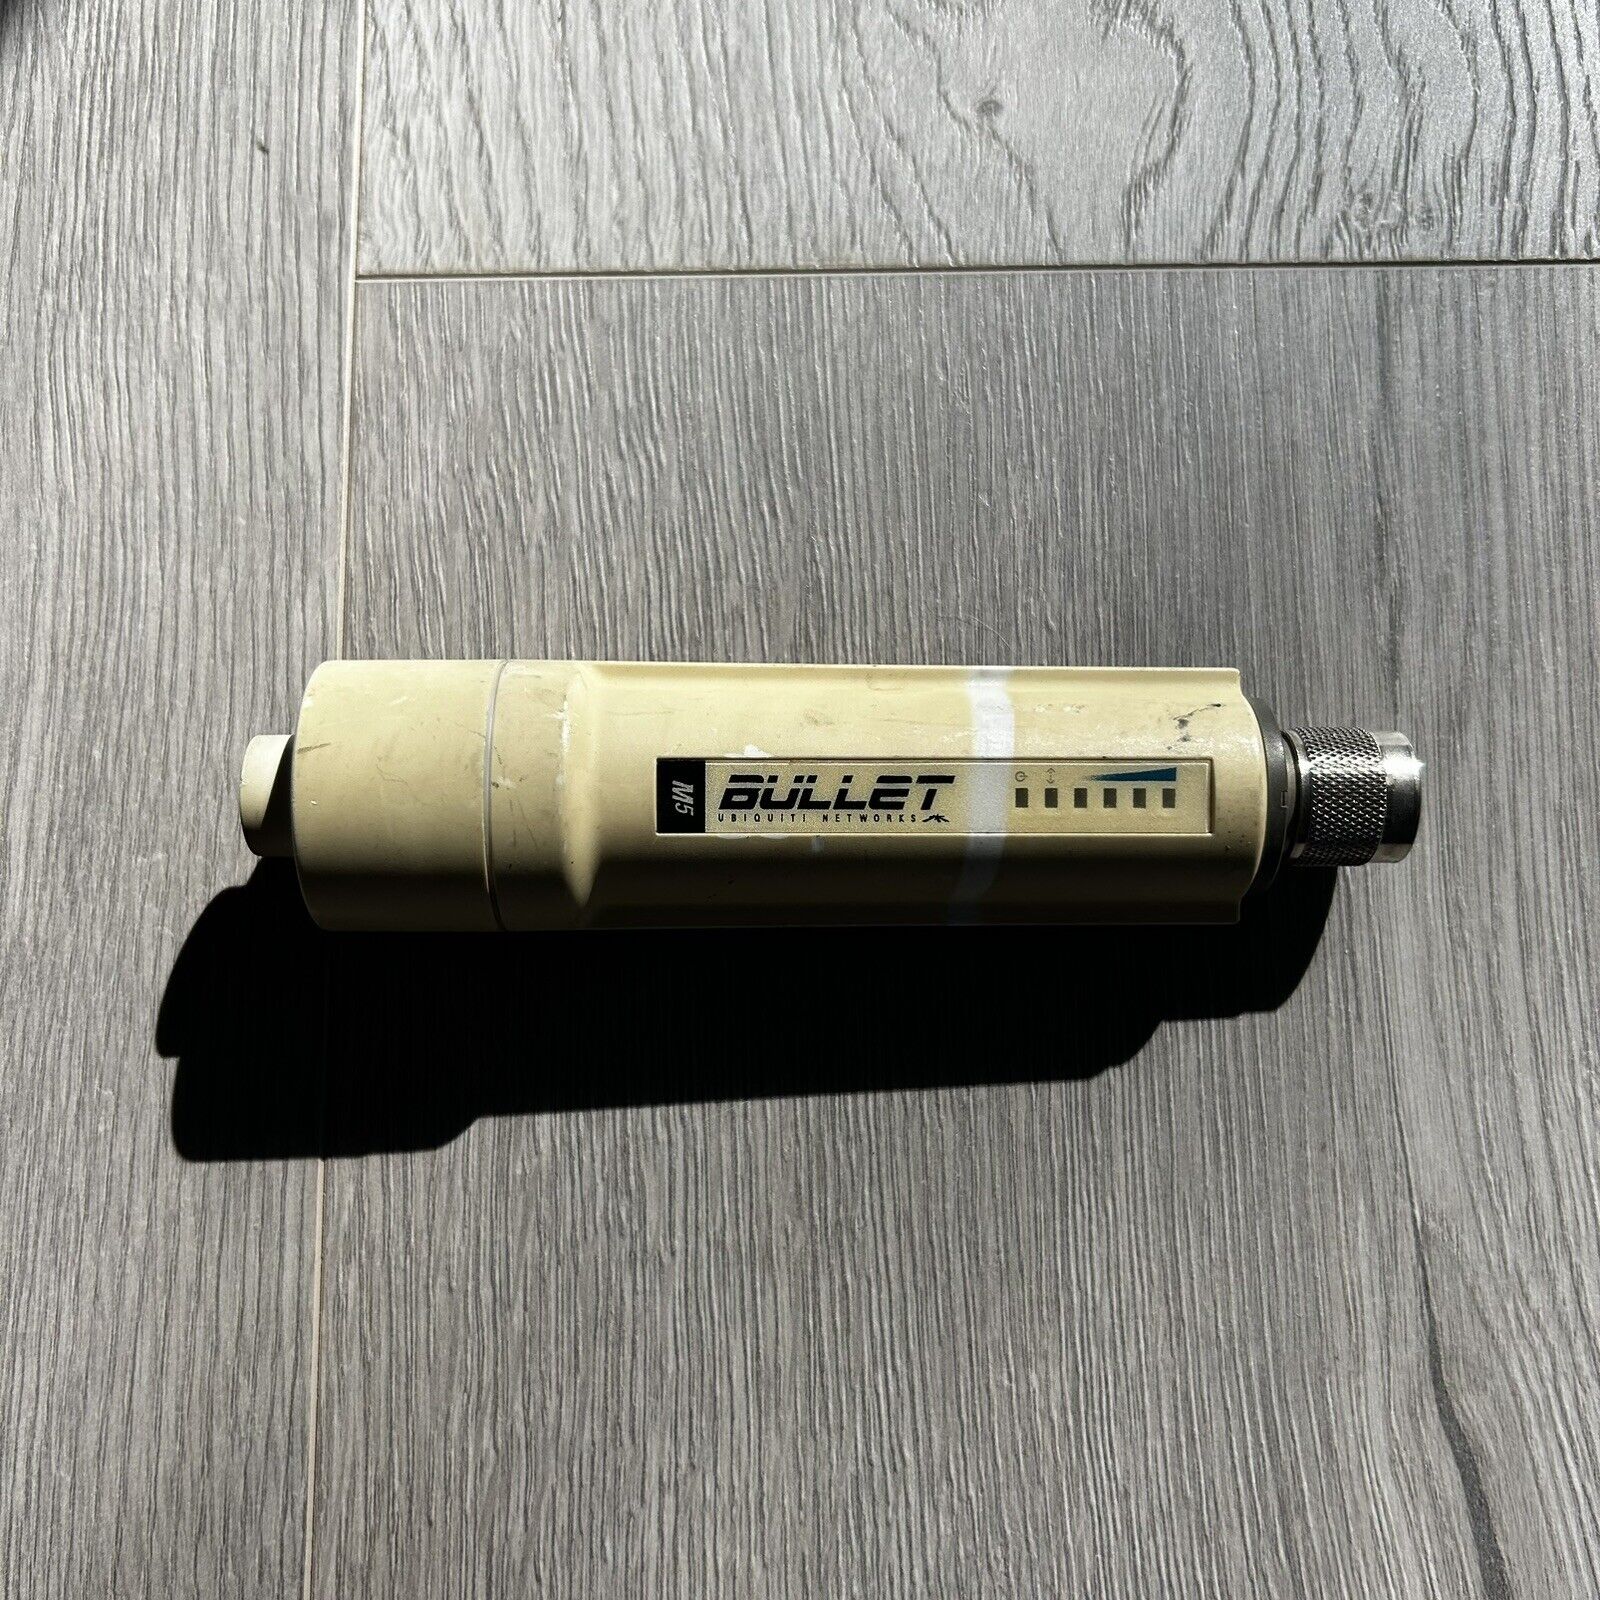 Ubiquiti UISP airMAX Bullet M5 (BulletM5) Outdoor Wireless 5Ghz Access Point